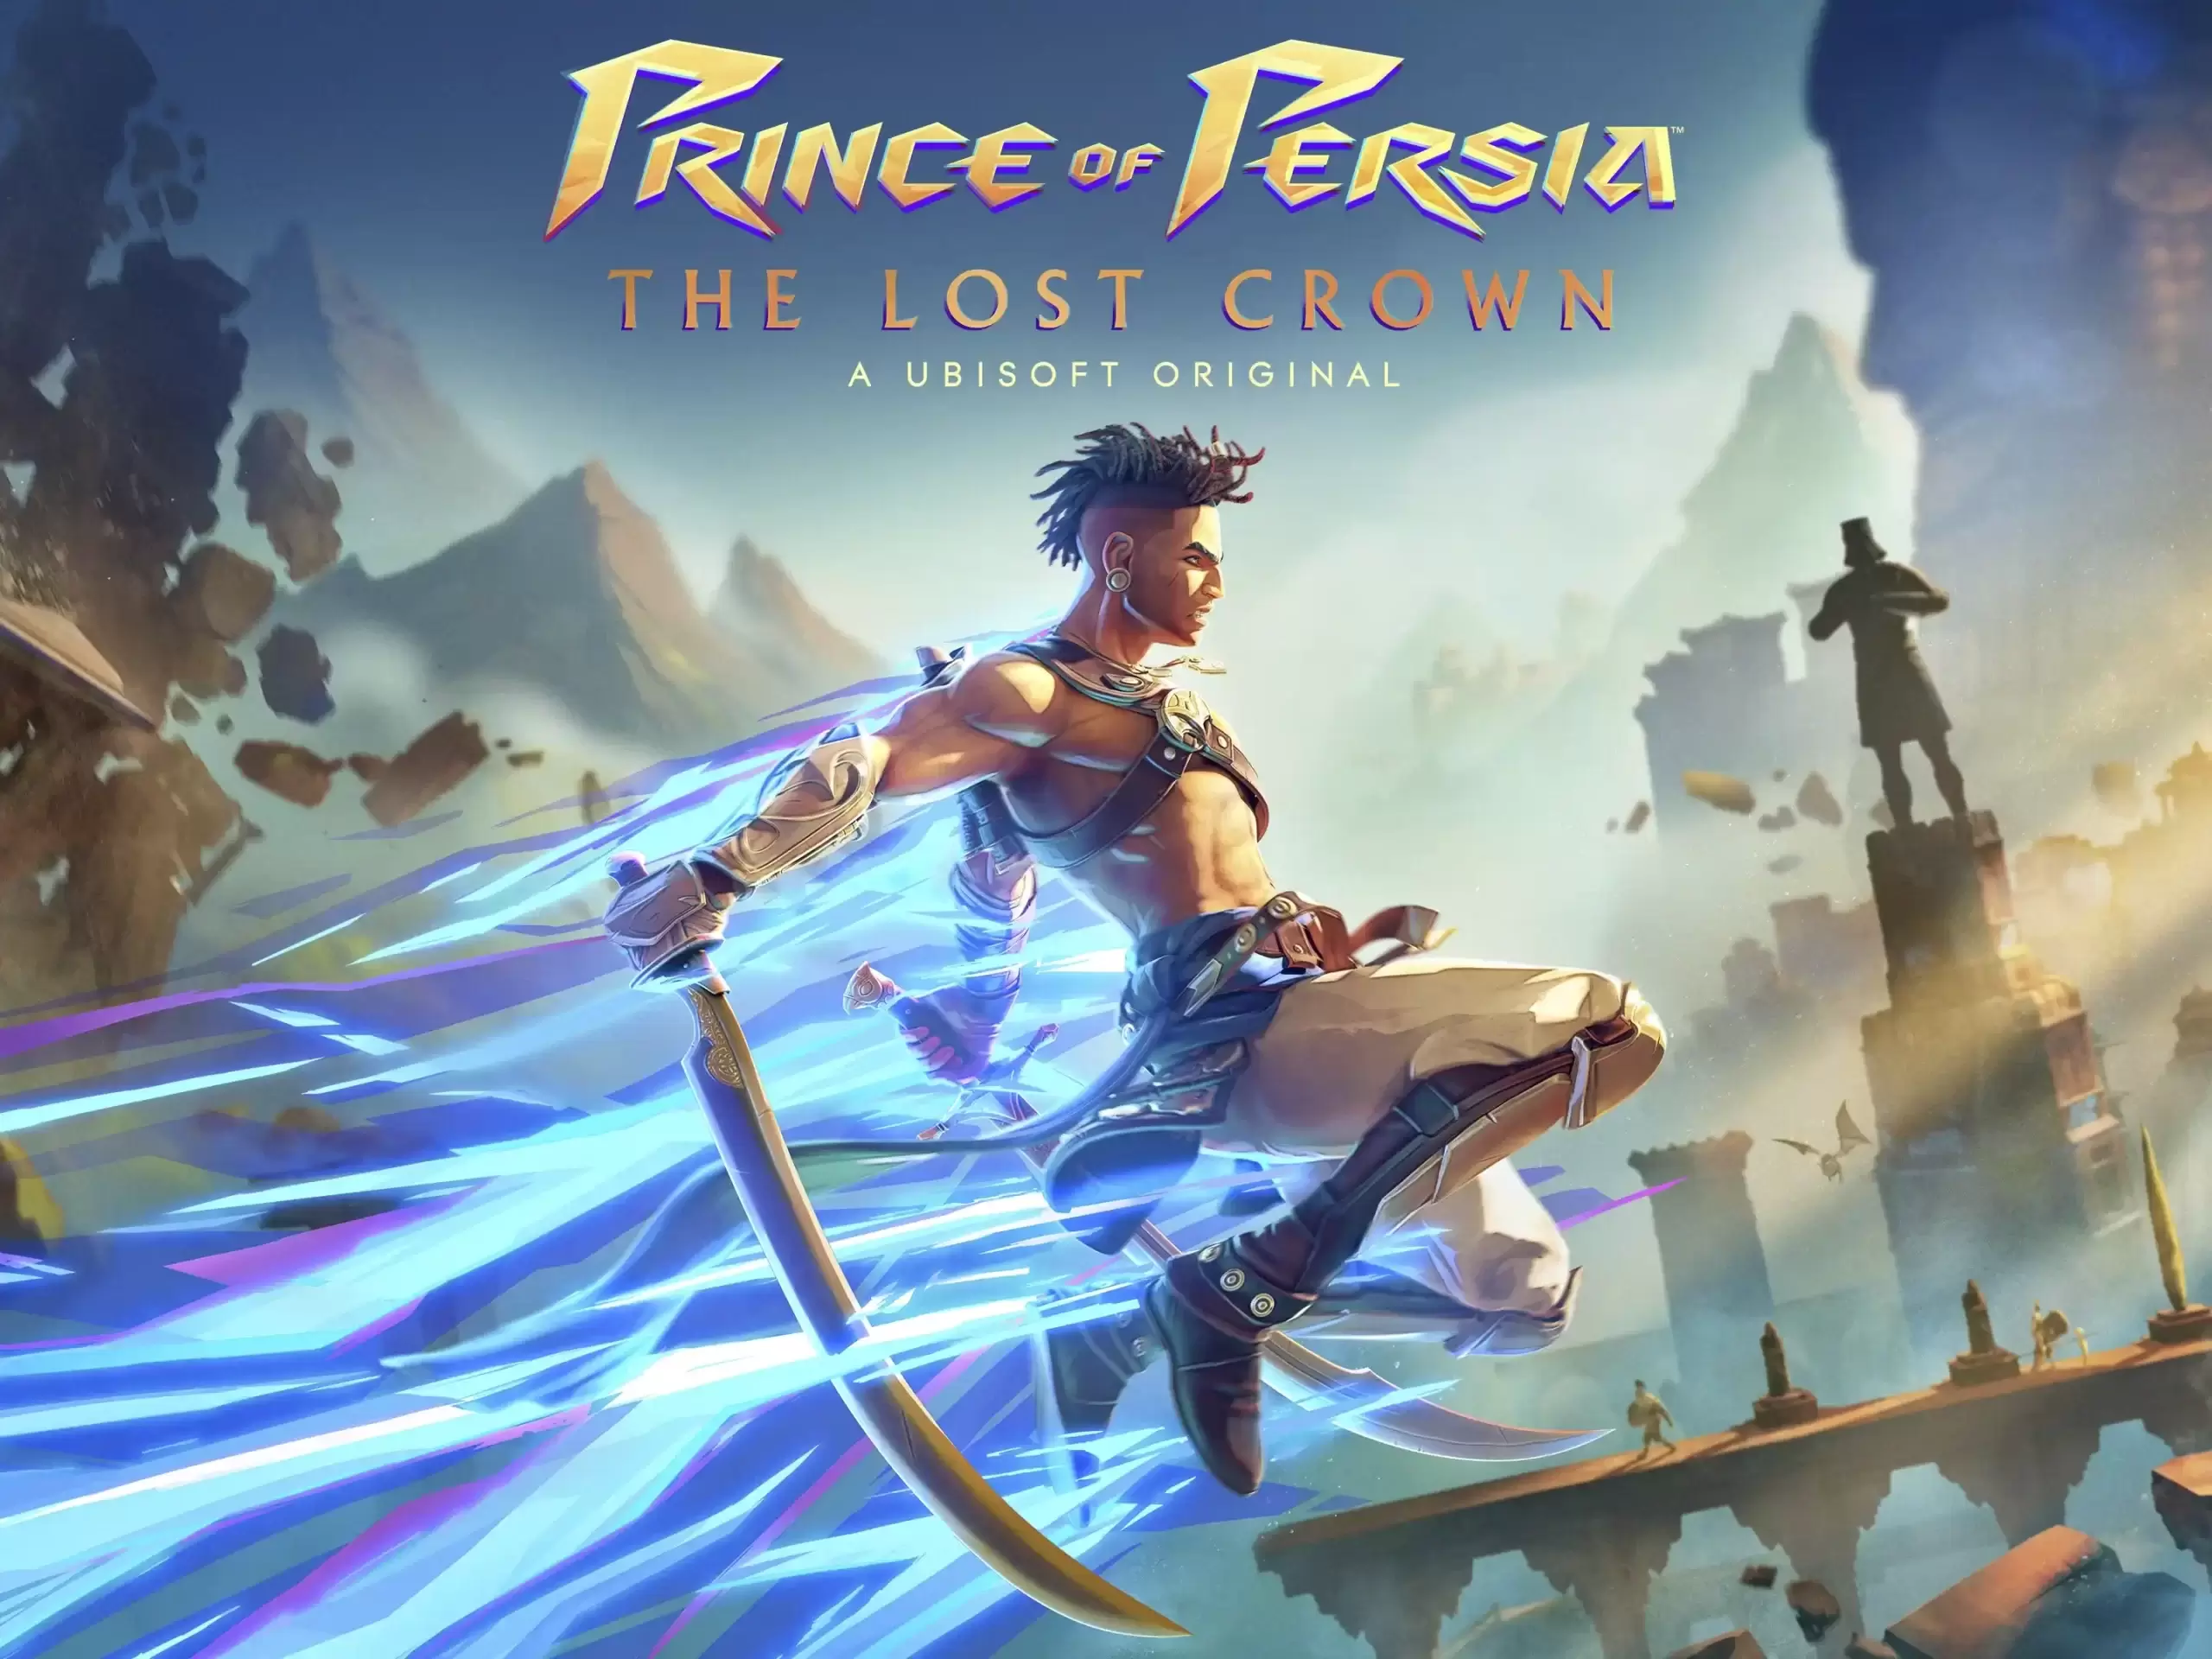 نسخه جدید بازی prince of persia با امکان انتخاب صدای فارسی